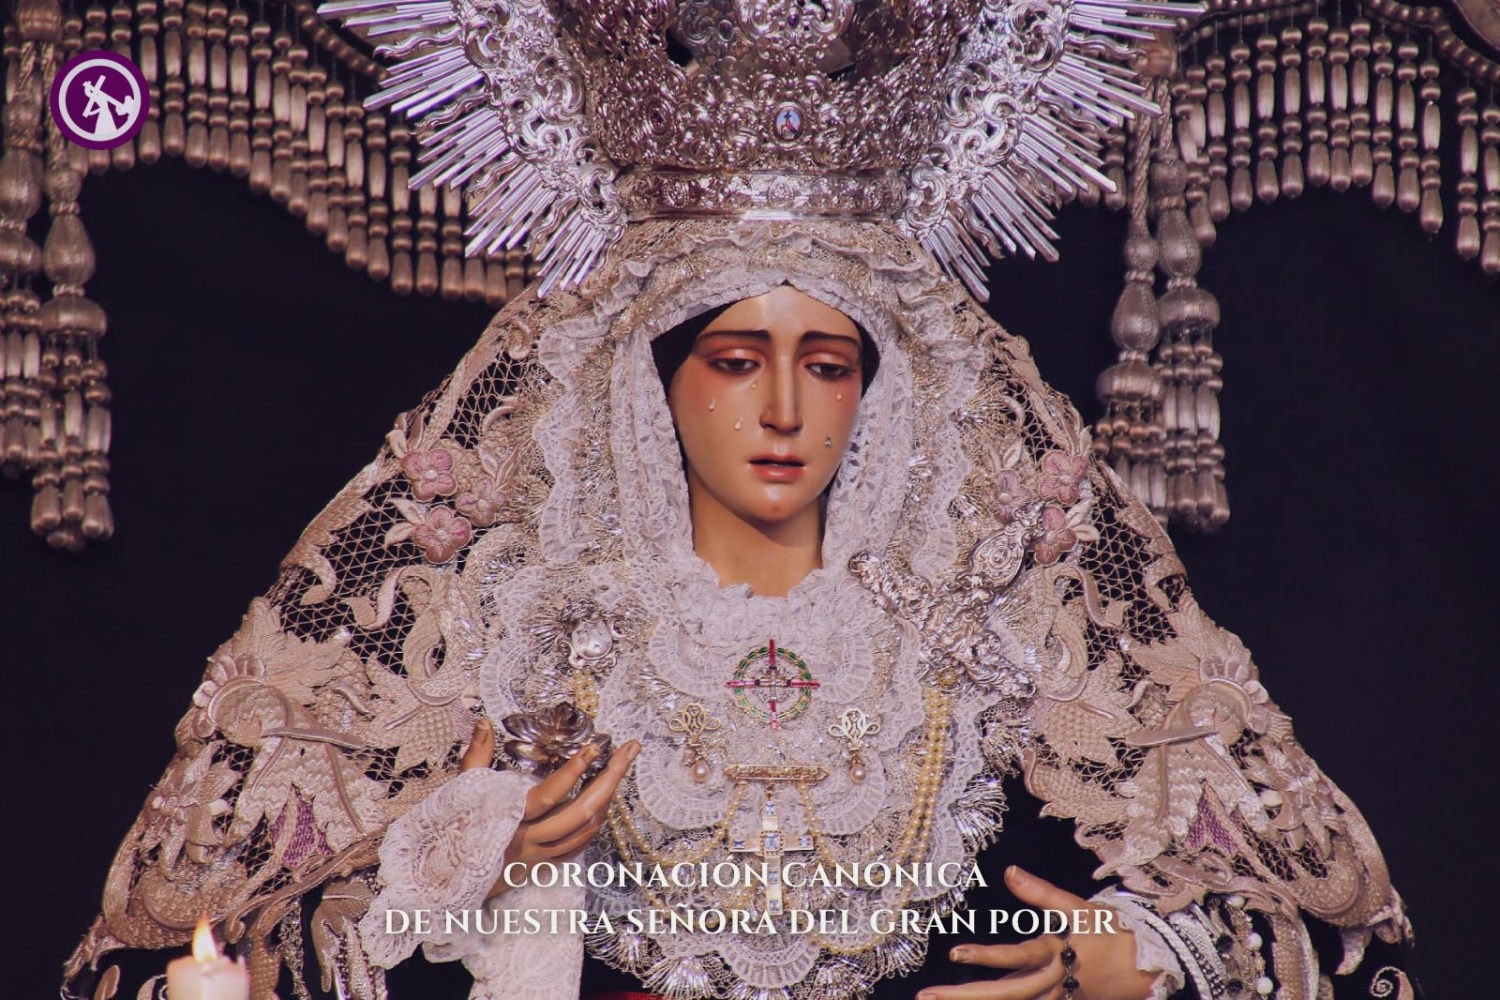 La Coronación Canónica de Nuestra Señora del Gran Poder más cerca de ser una realidad.